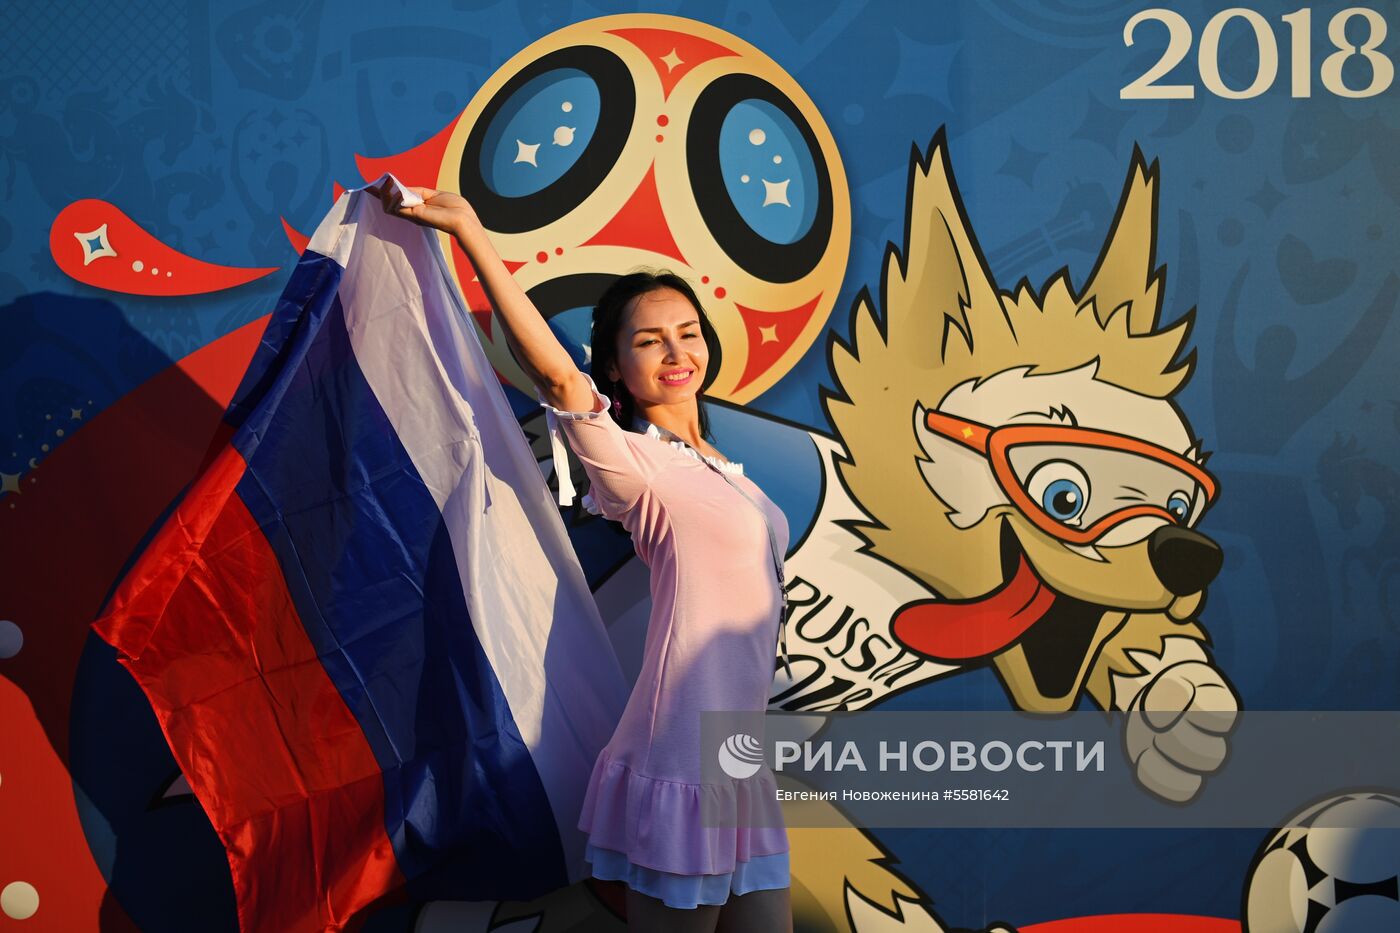 Болельщики перед матчем ЧМ-2018 по футболу между сборными России и Хорватии